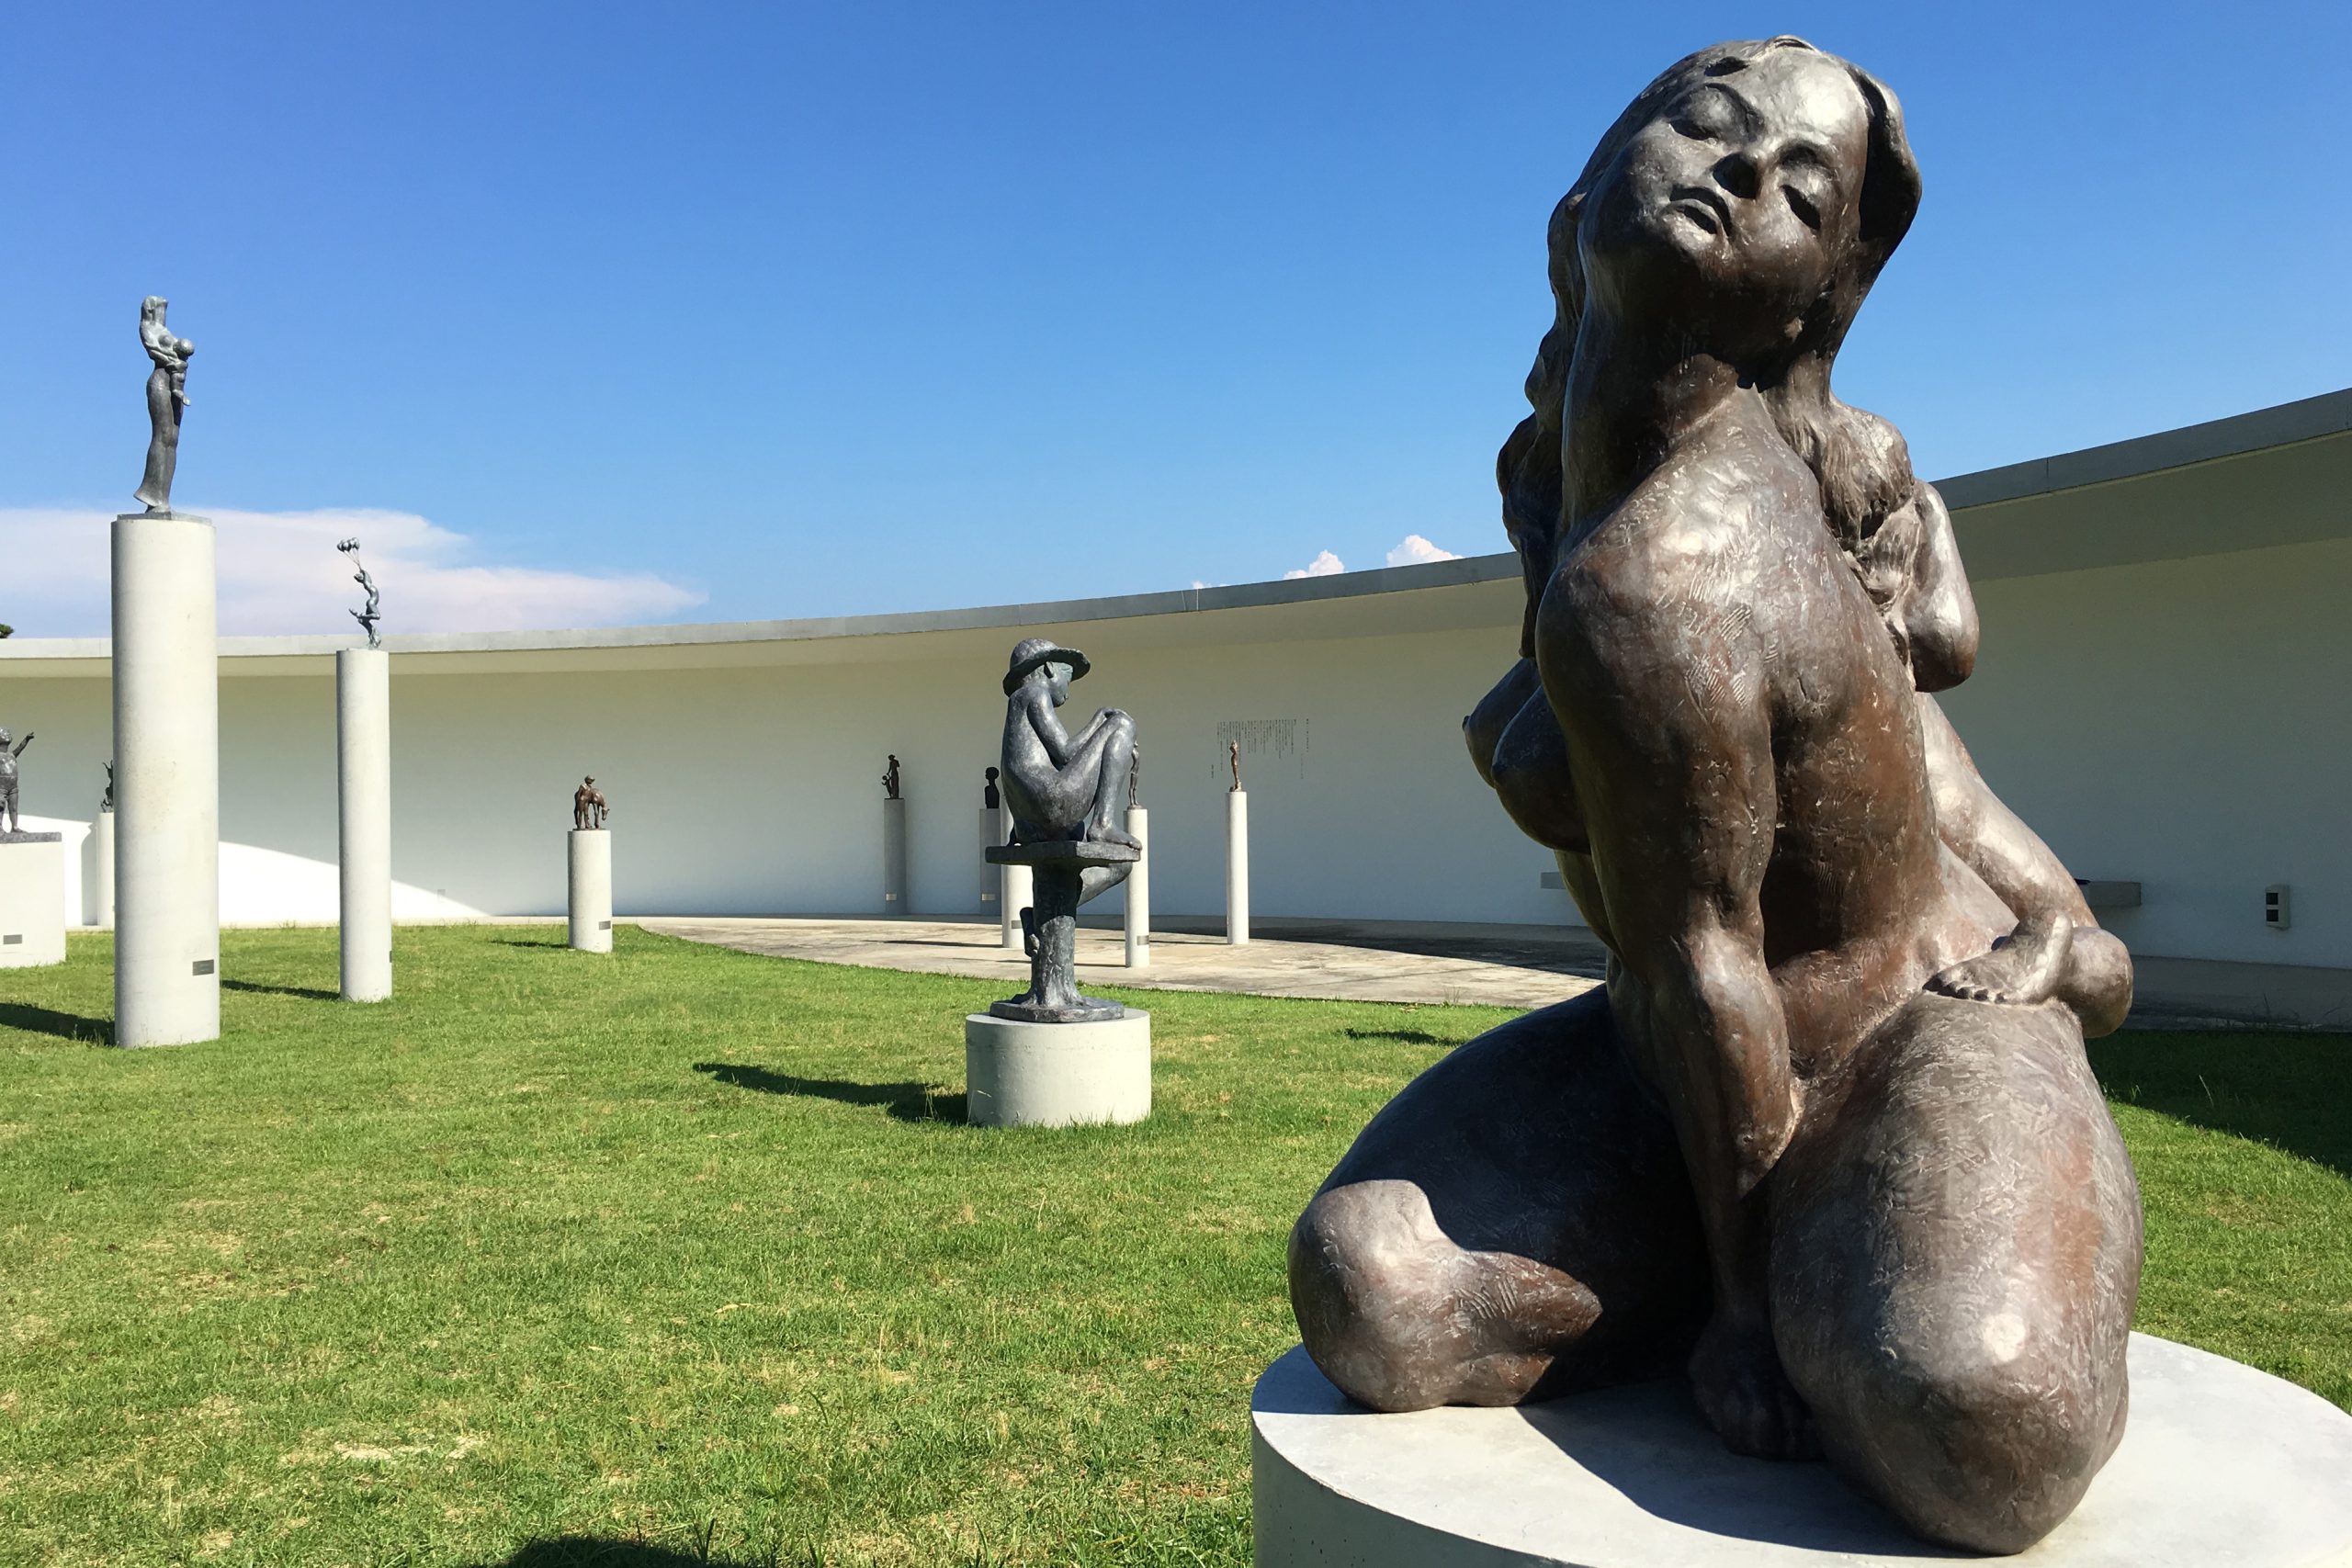 Ken Iwata Mother & Child Museum sculptures